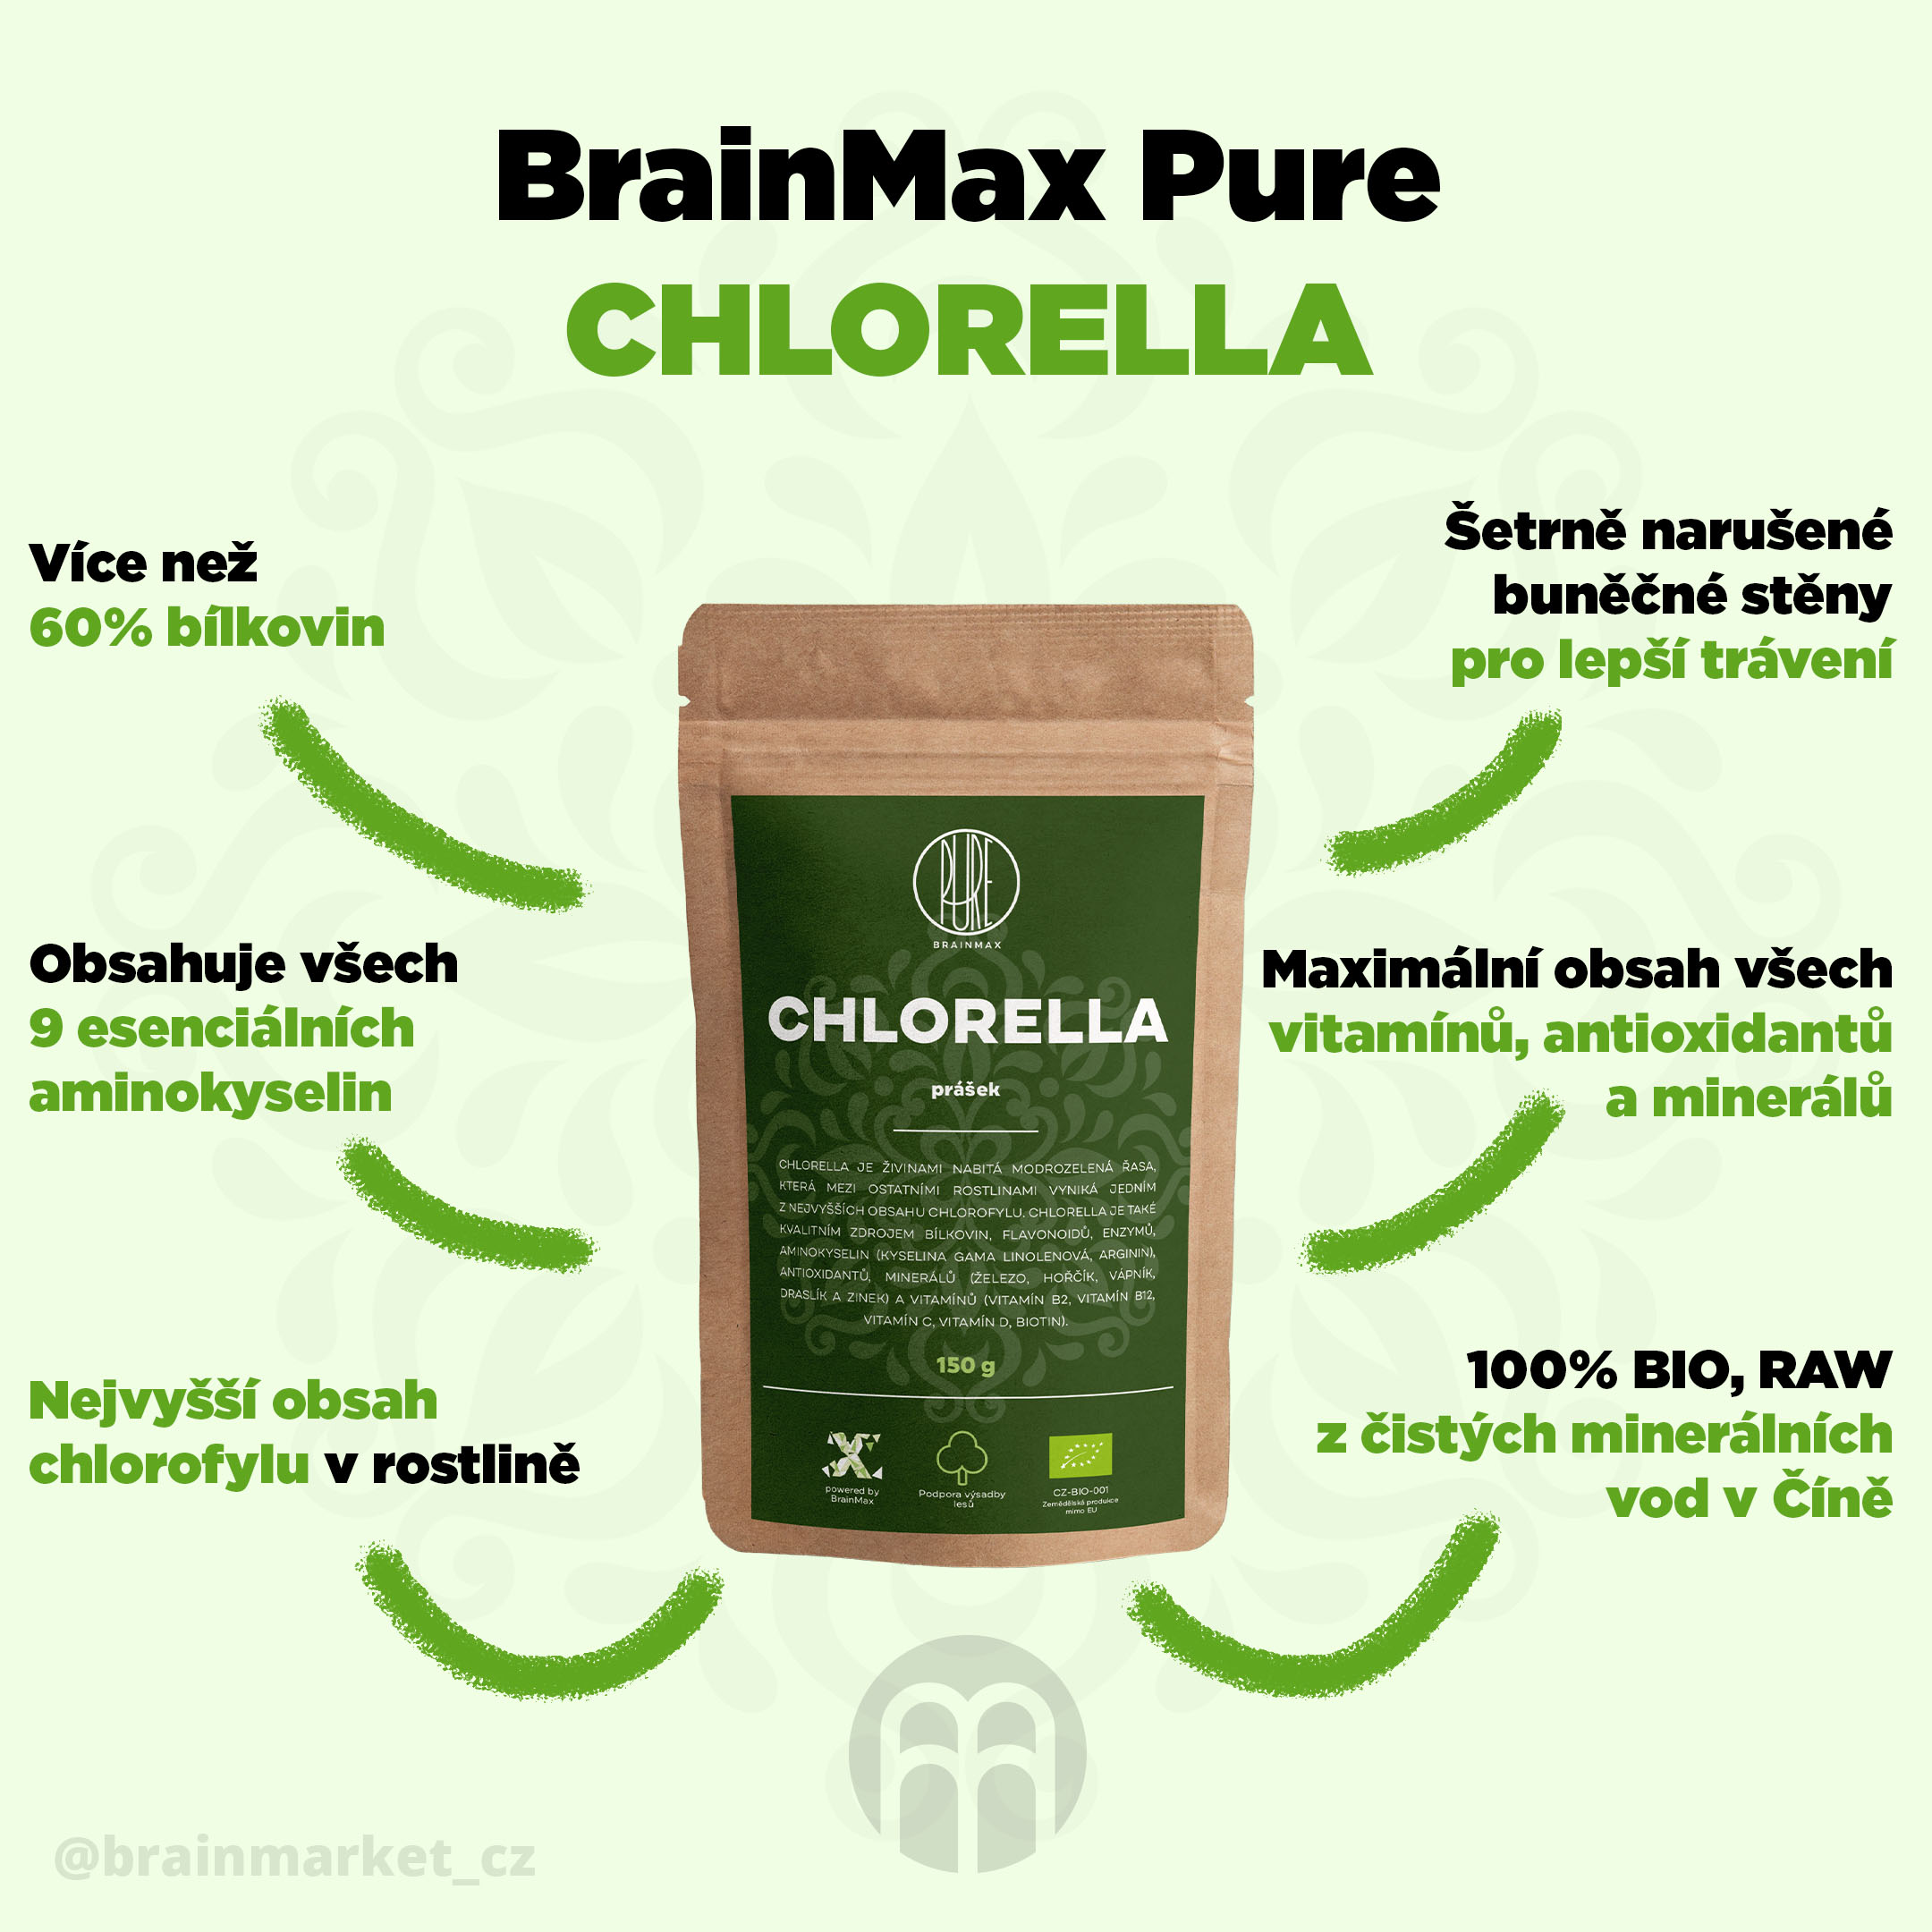 Chlorella - co obsahuje a jaké jsou její účinky?